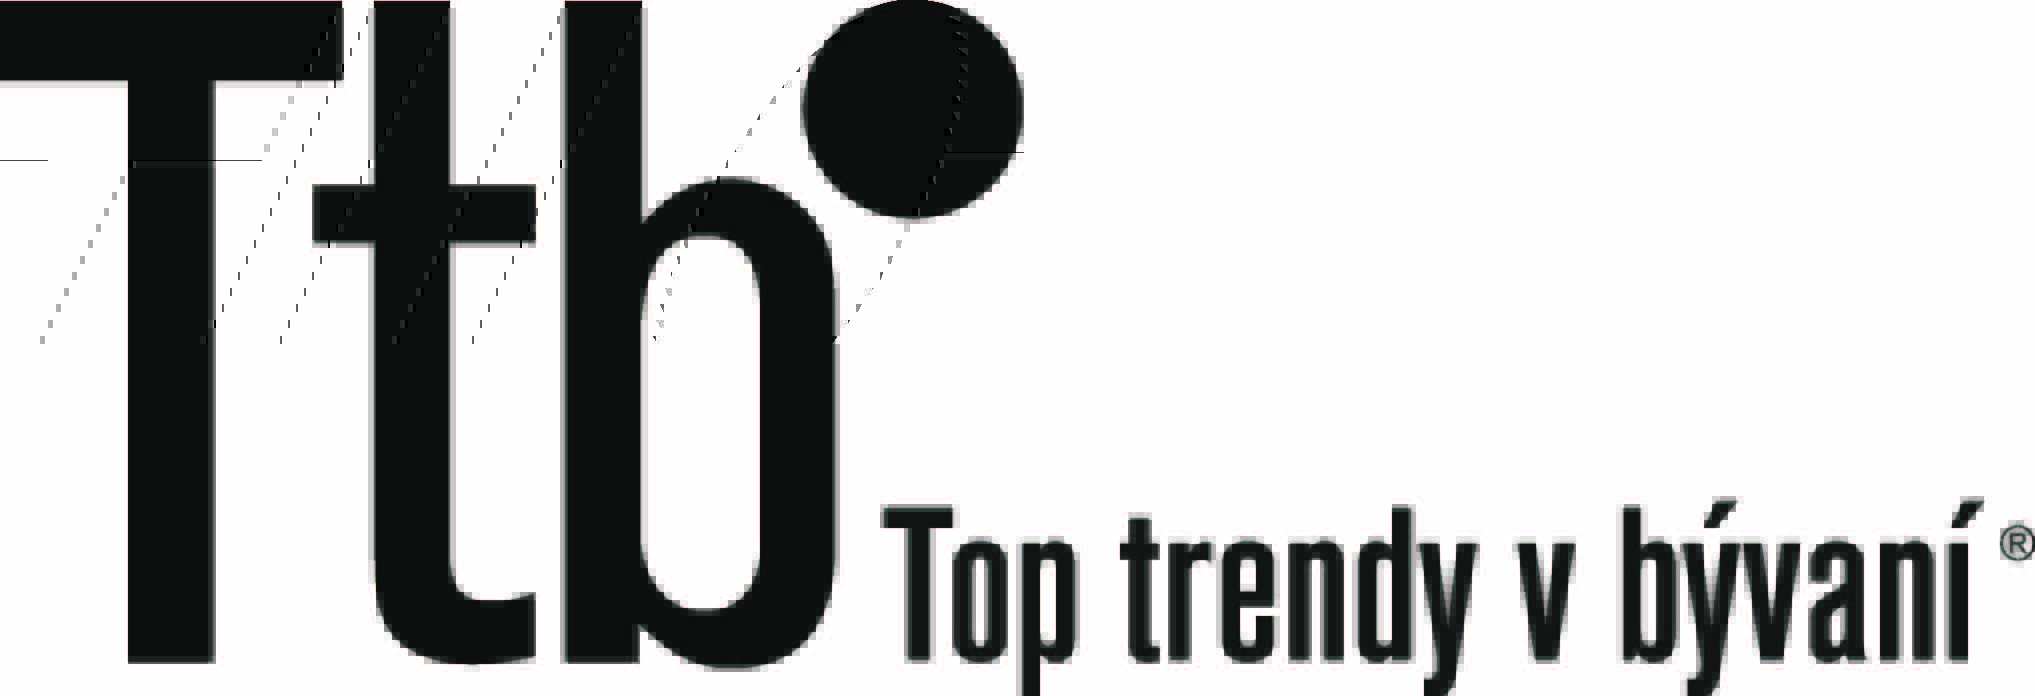 TOP trendy